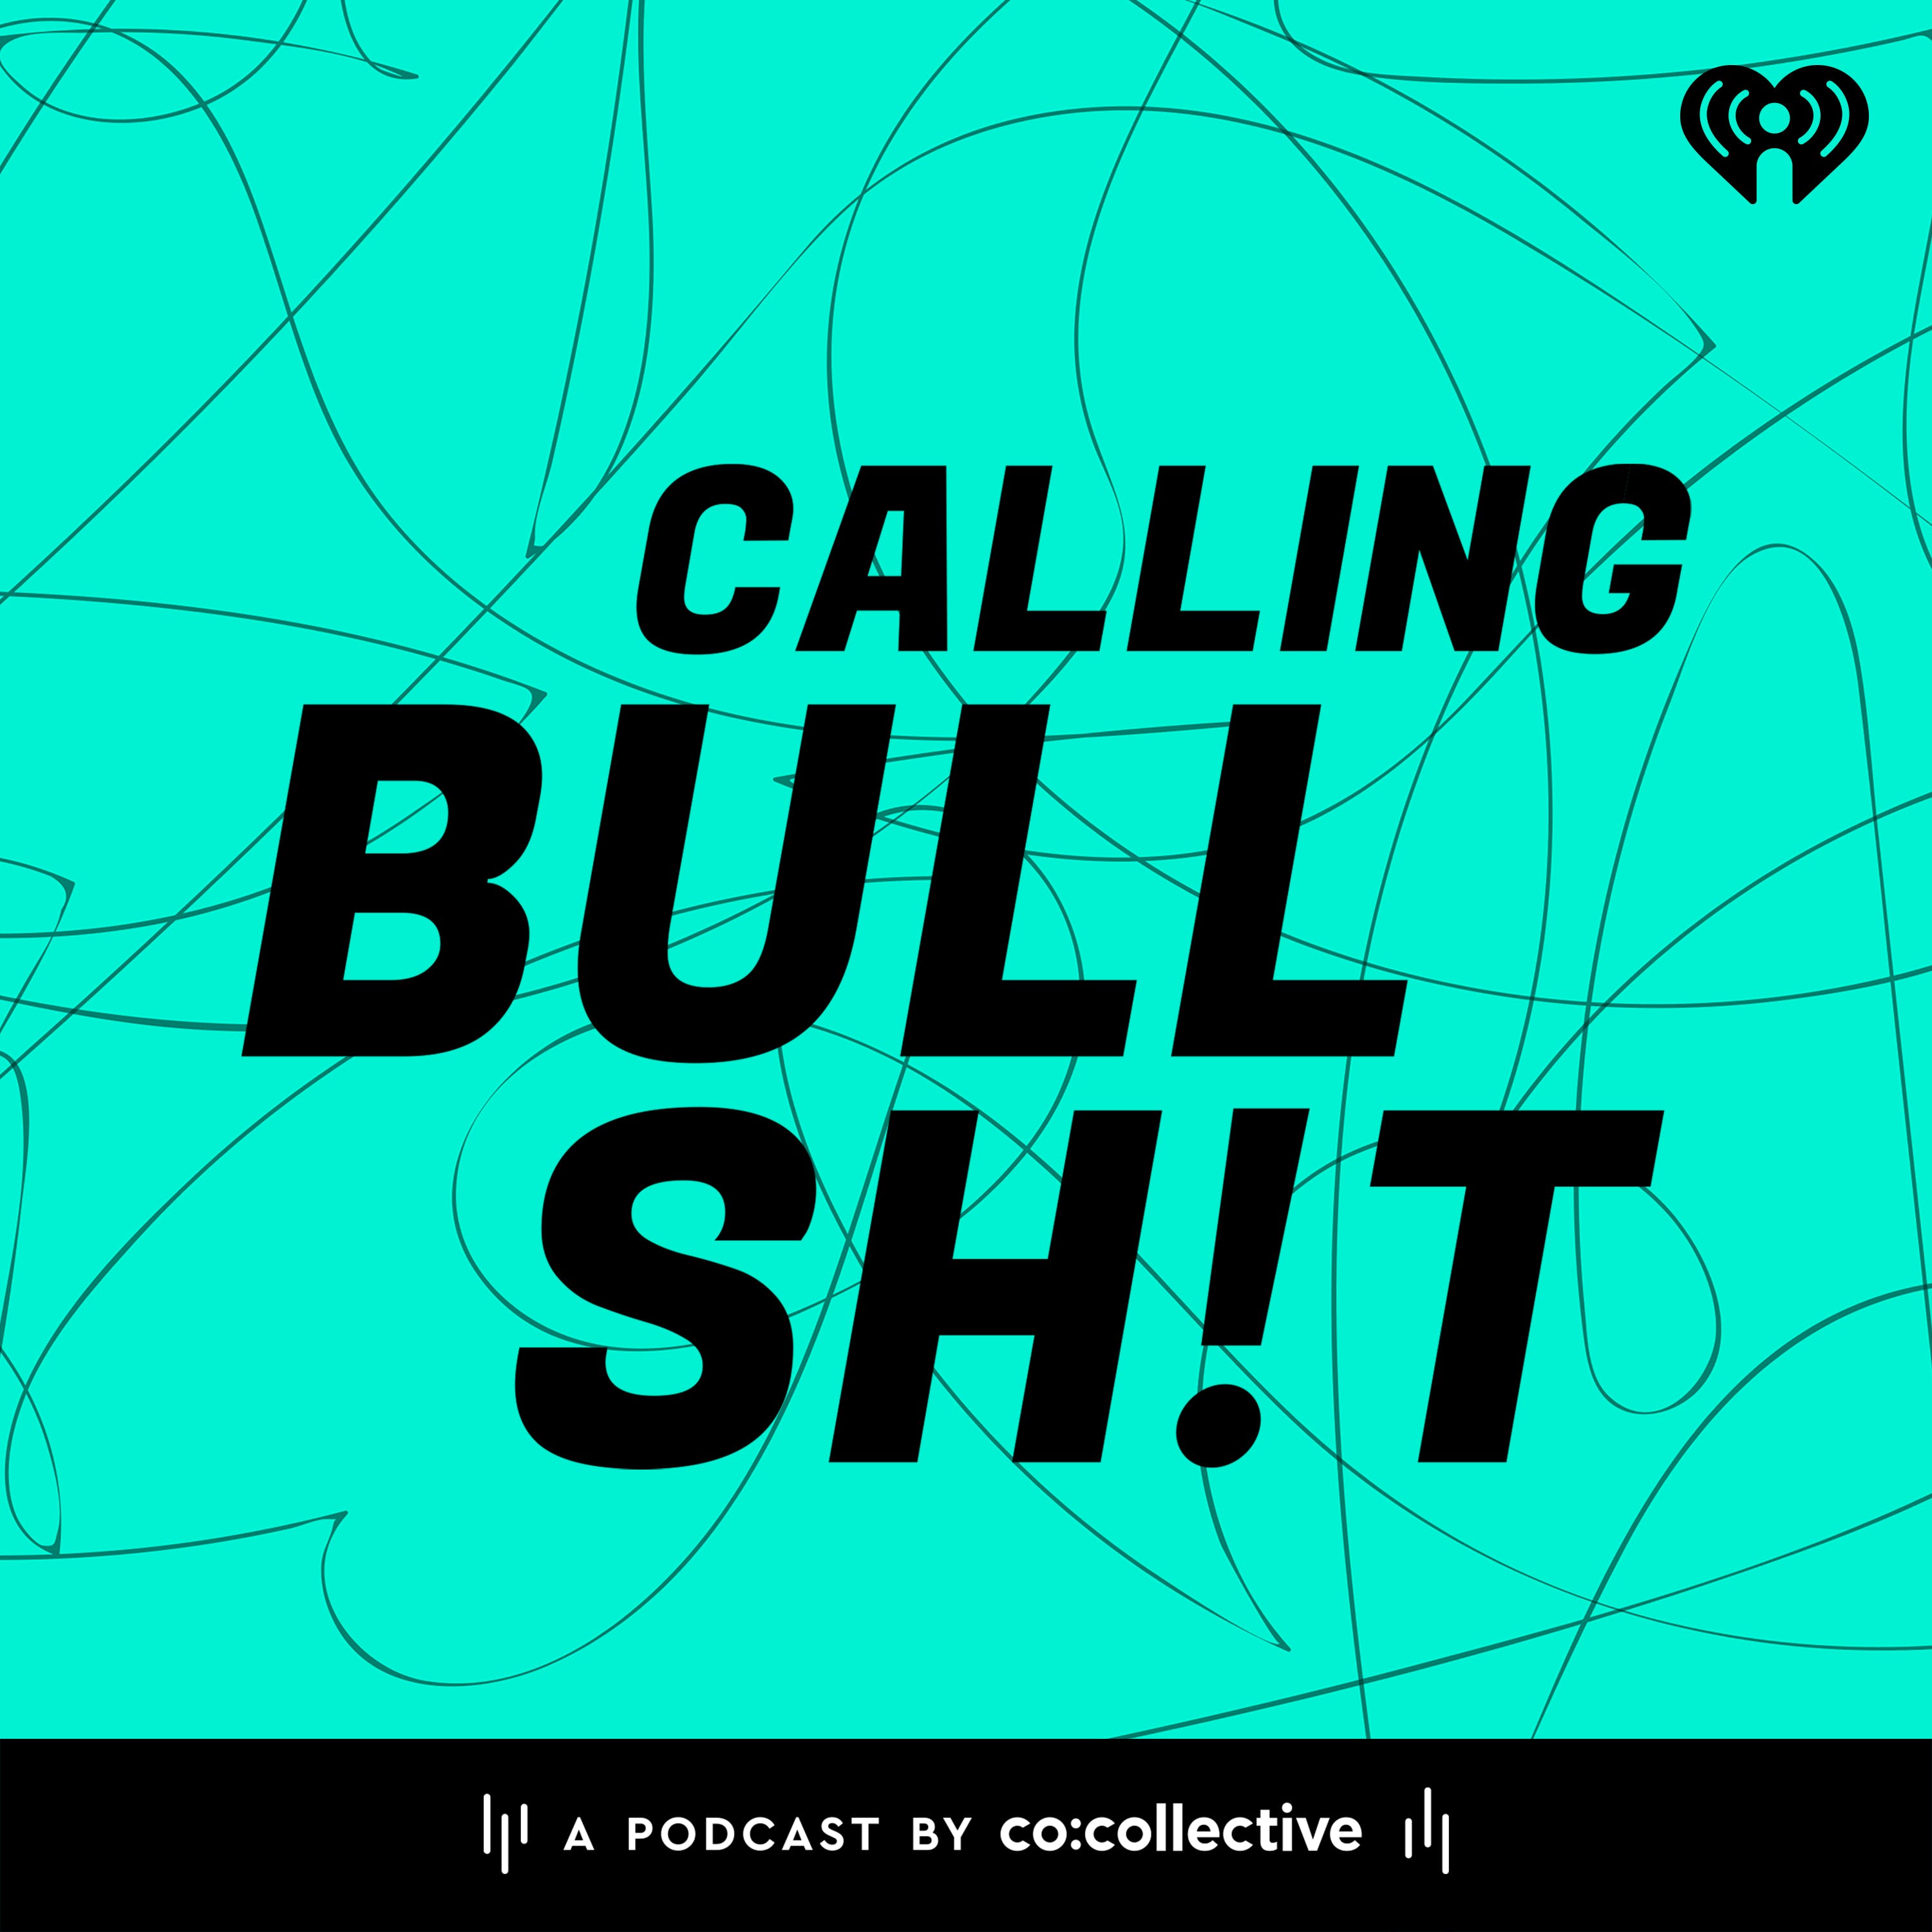 Calling Bullsh!t podcast show image